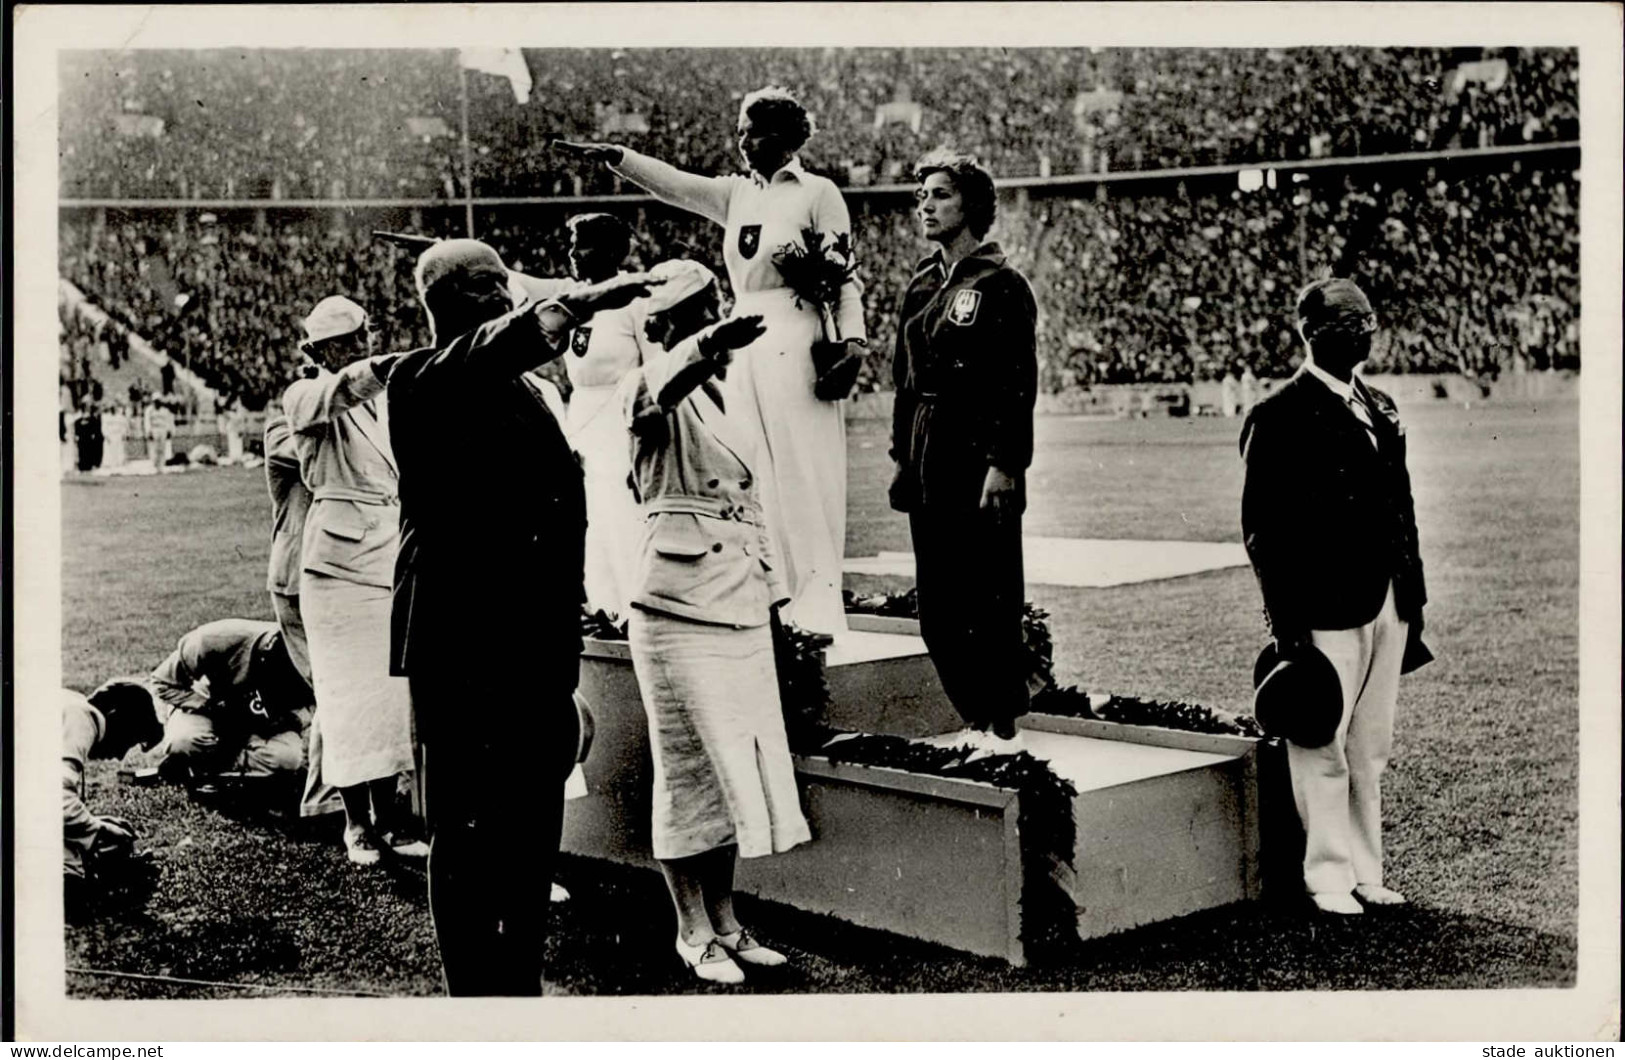 BERLIN OLYMPIA 1936 WK II - PH O 25die Erste Goldmedaille Für Deutschland - Sieger-Ehrung S-o I-II - Olympische Spiele